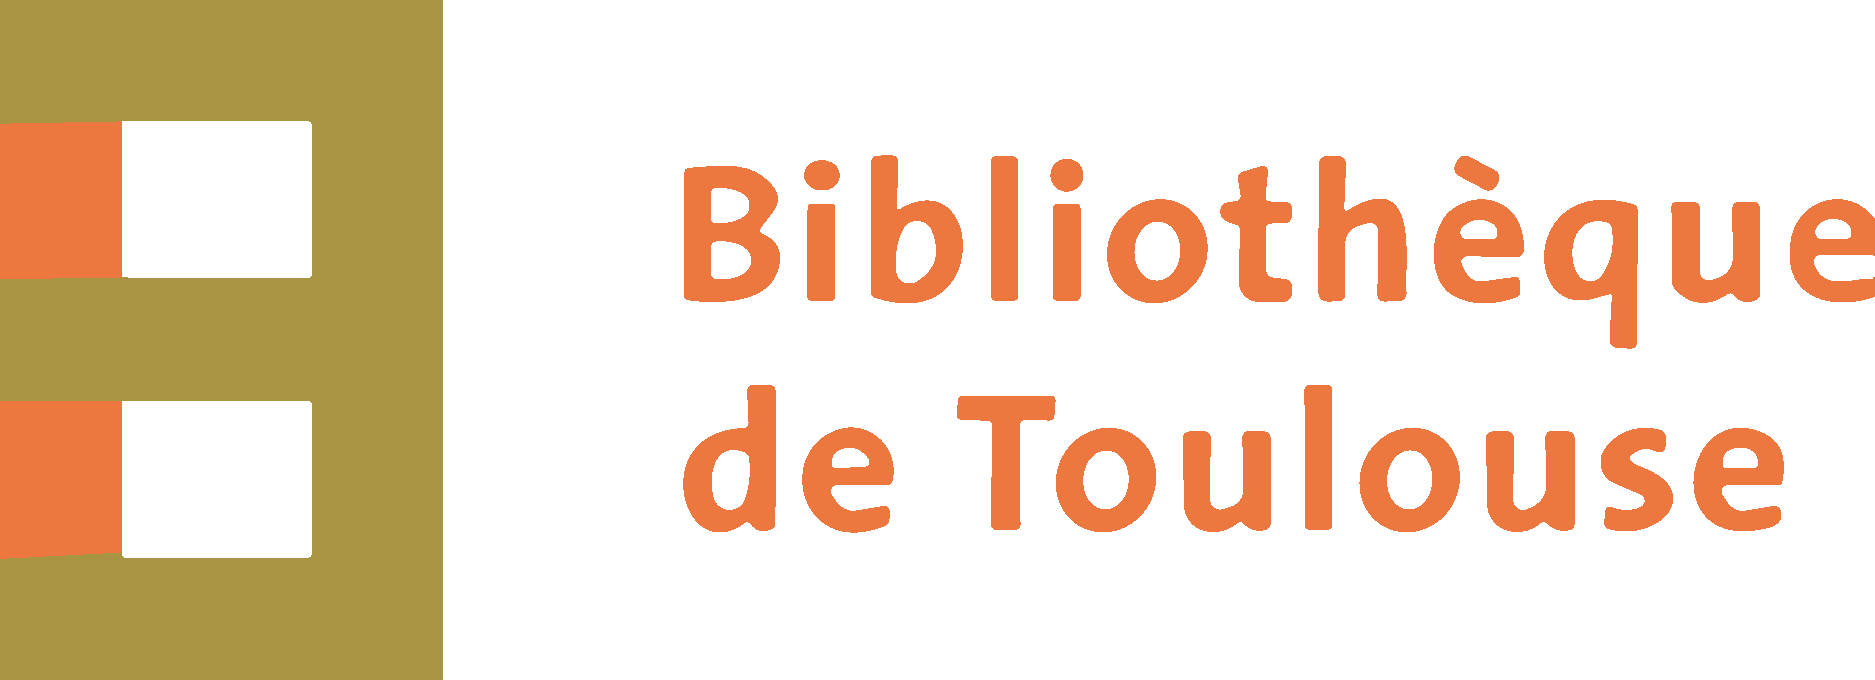 Bibliothèque de Toulouse Logo Vector - (.Ai .PNG .SVG .EPS Free Download)